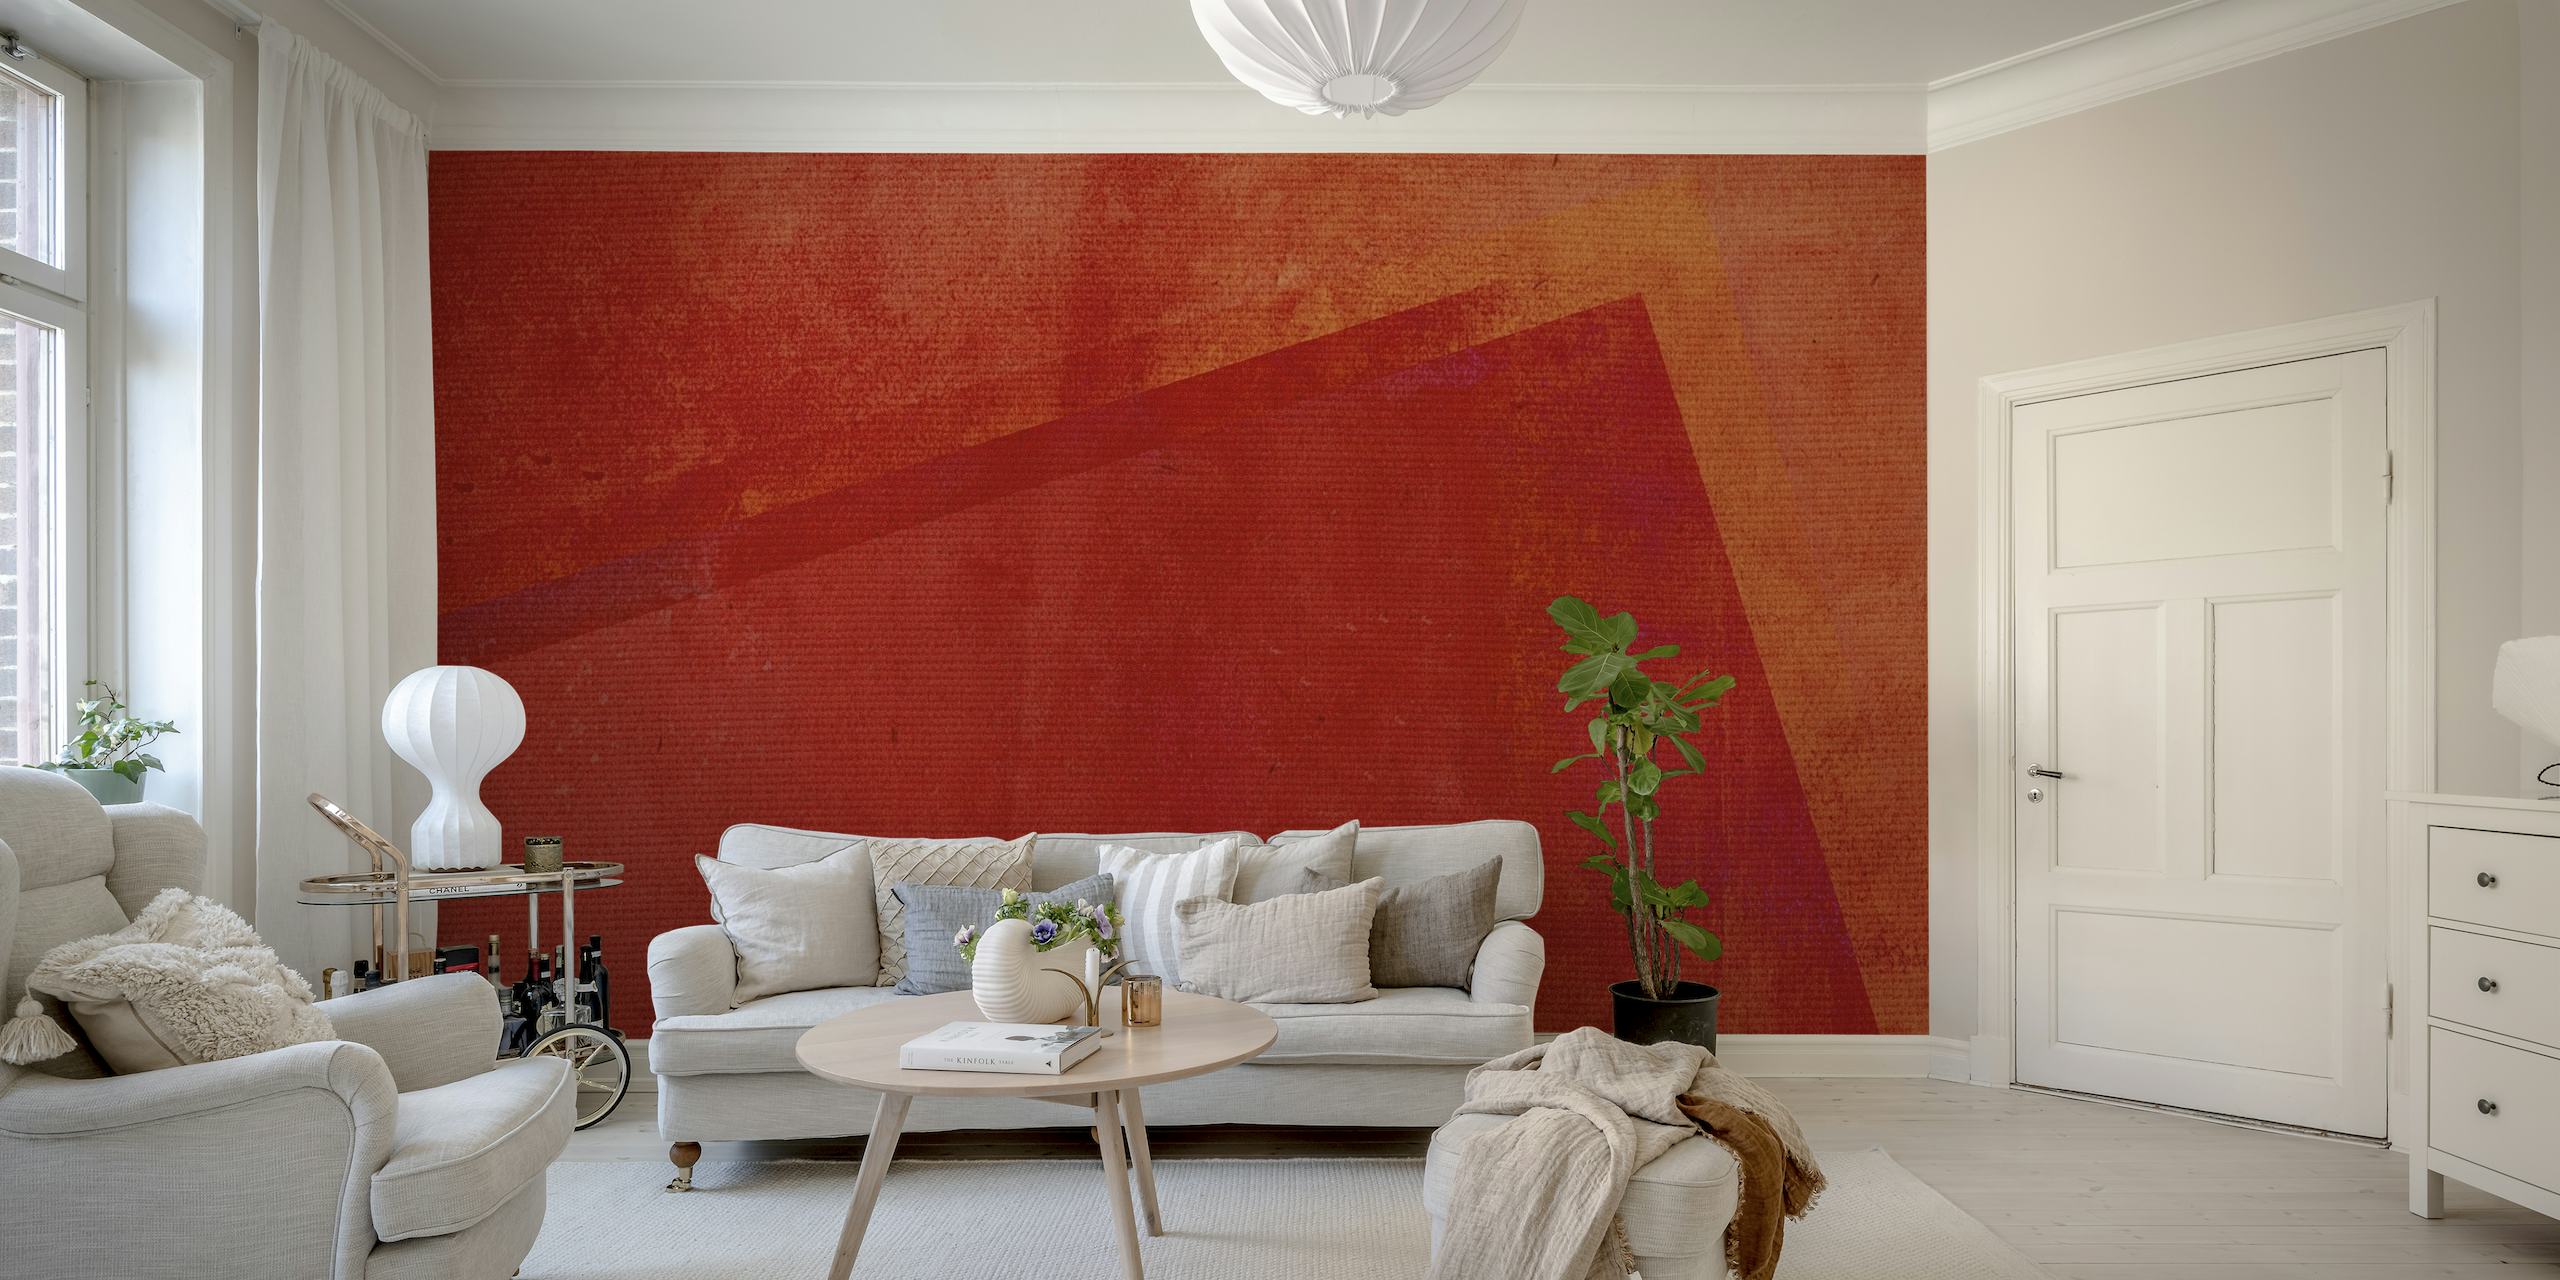 Abstract fotobehang in rode tinten met textuurondertonen